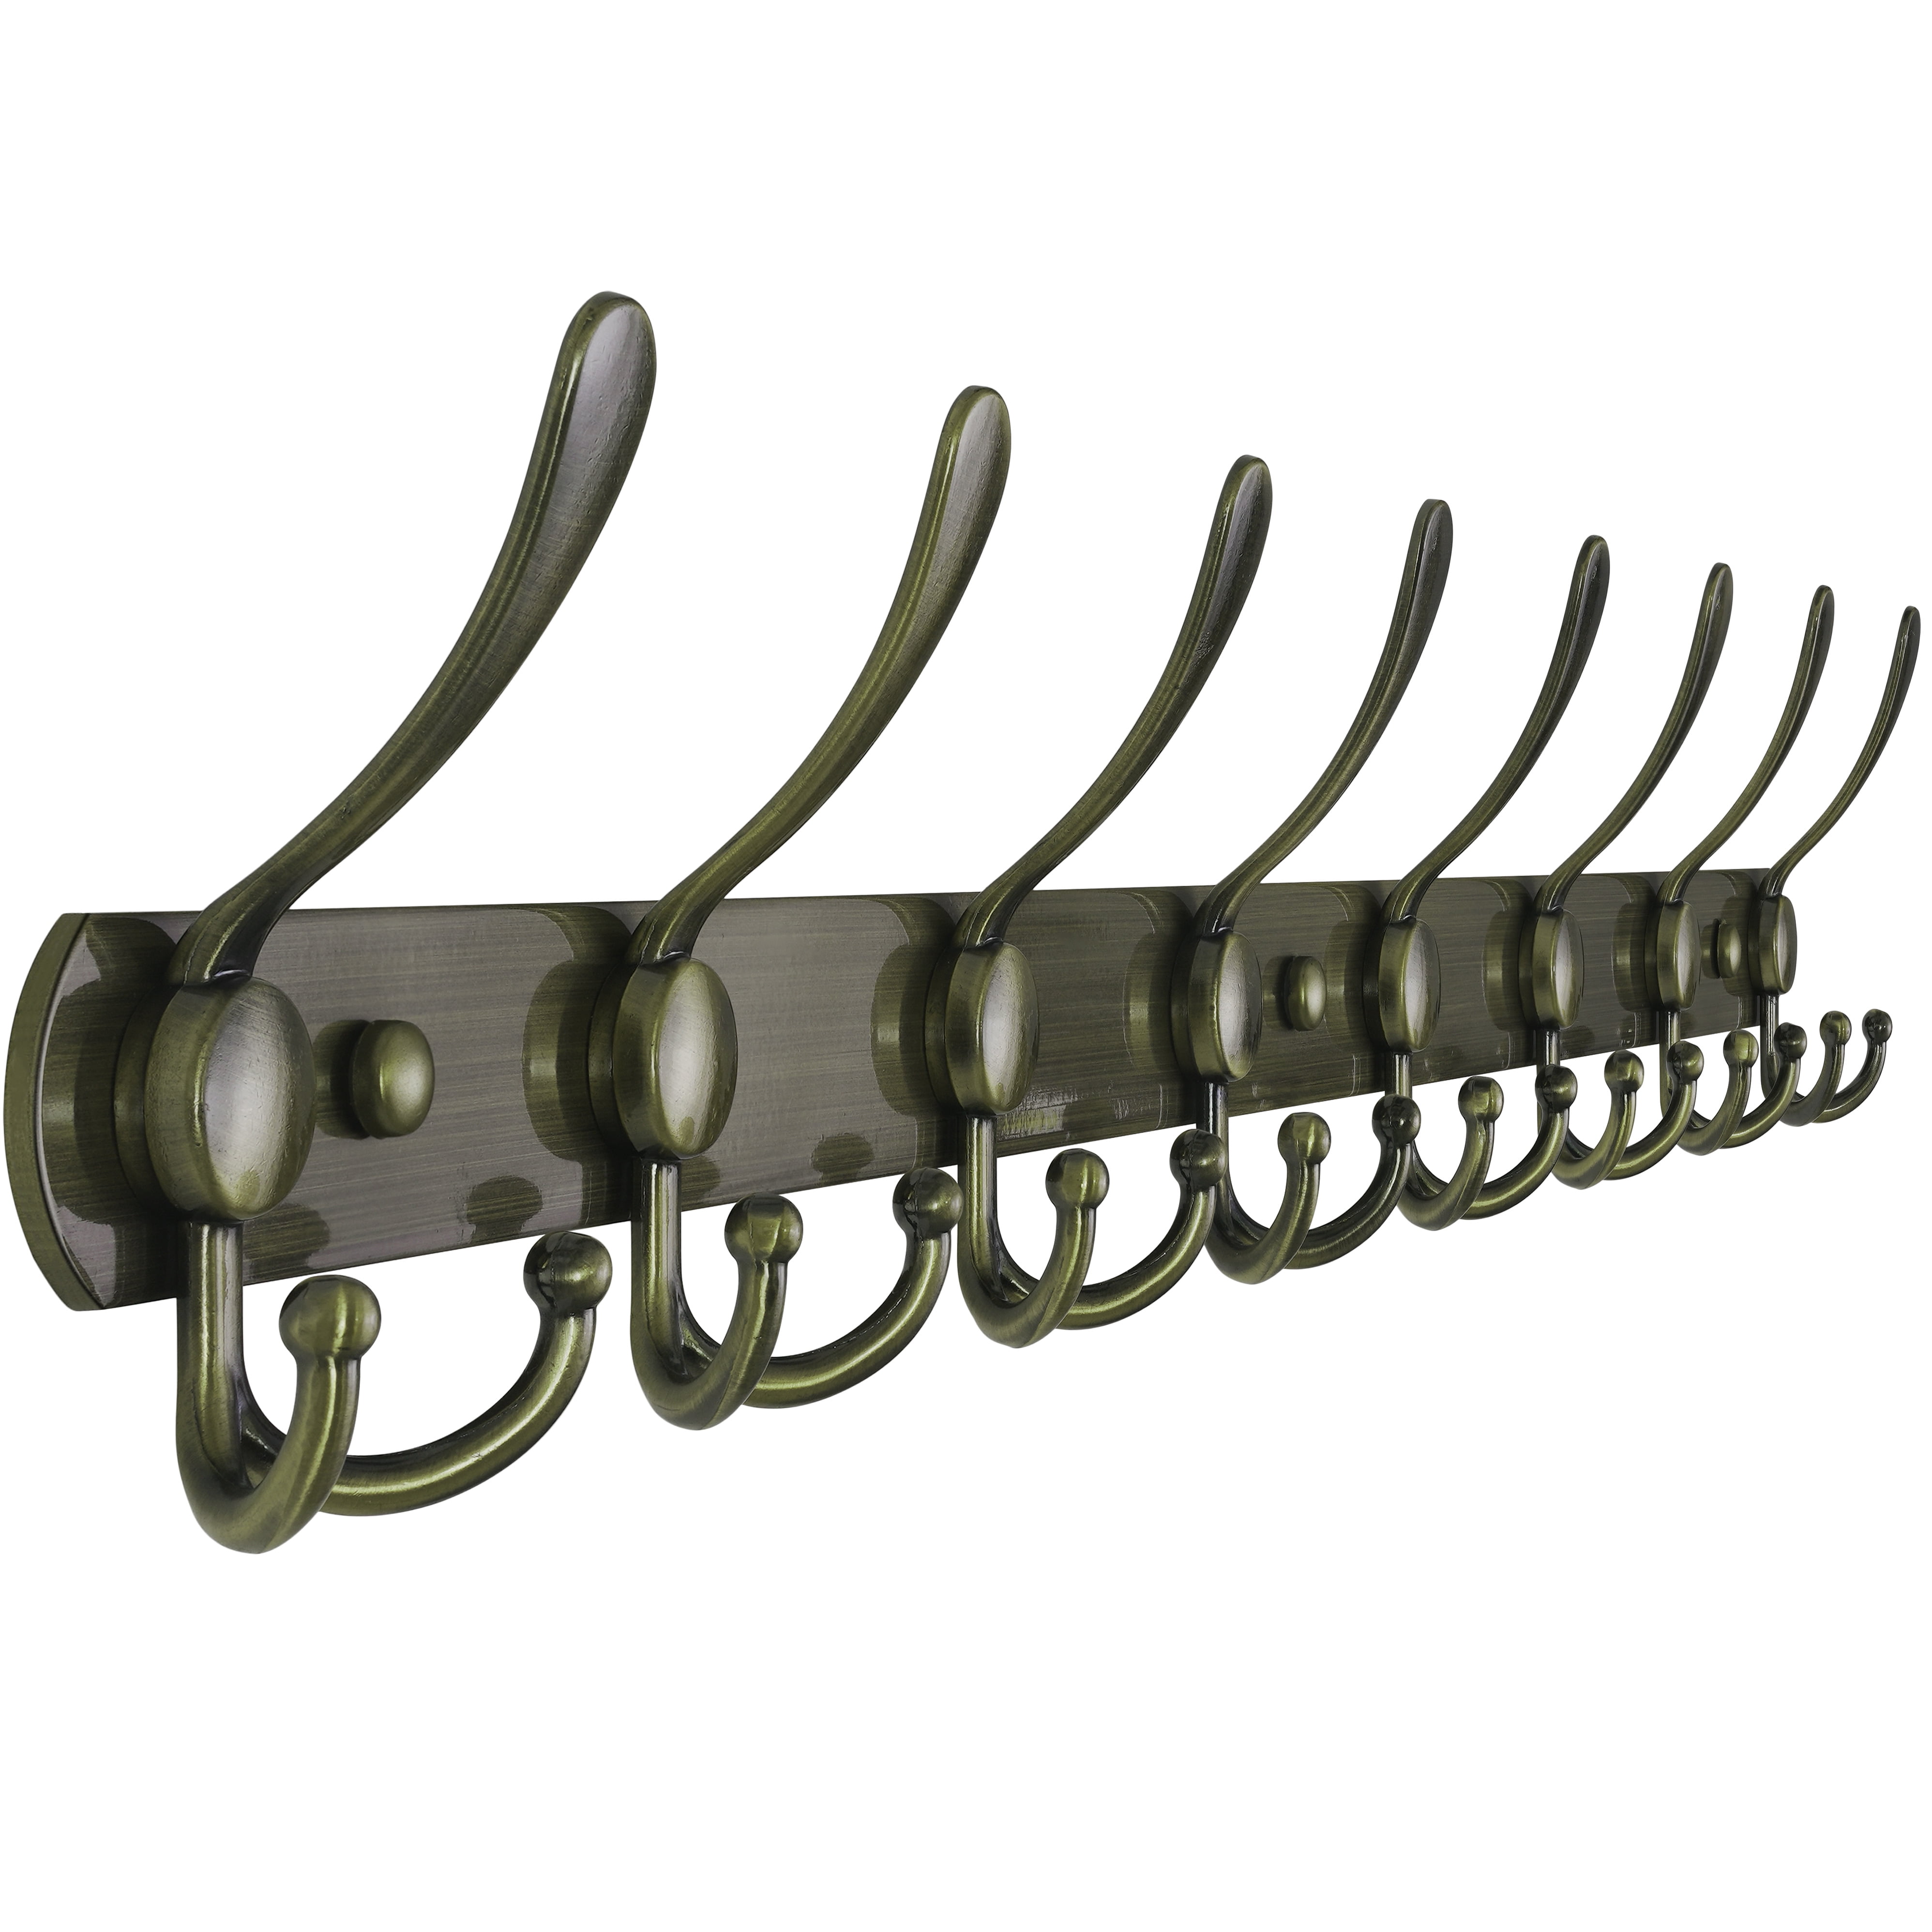 Dseap Coat Rack Wall Mounted-5 Tri Hooks,Stainless Steel Heavy